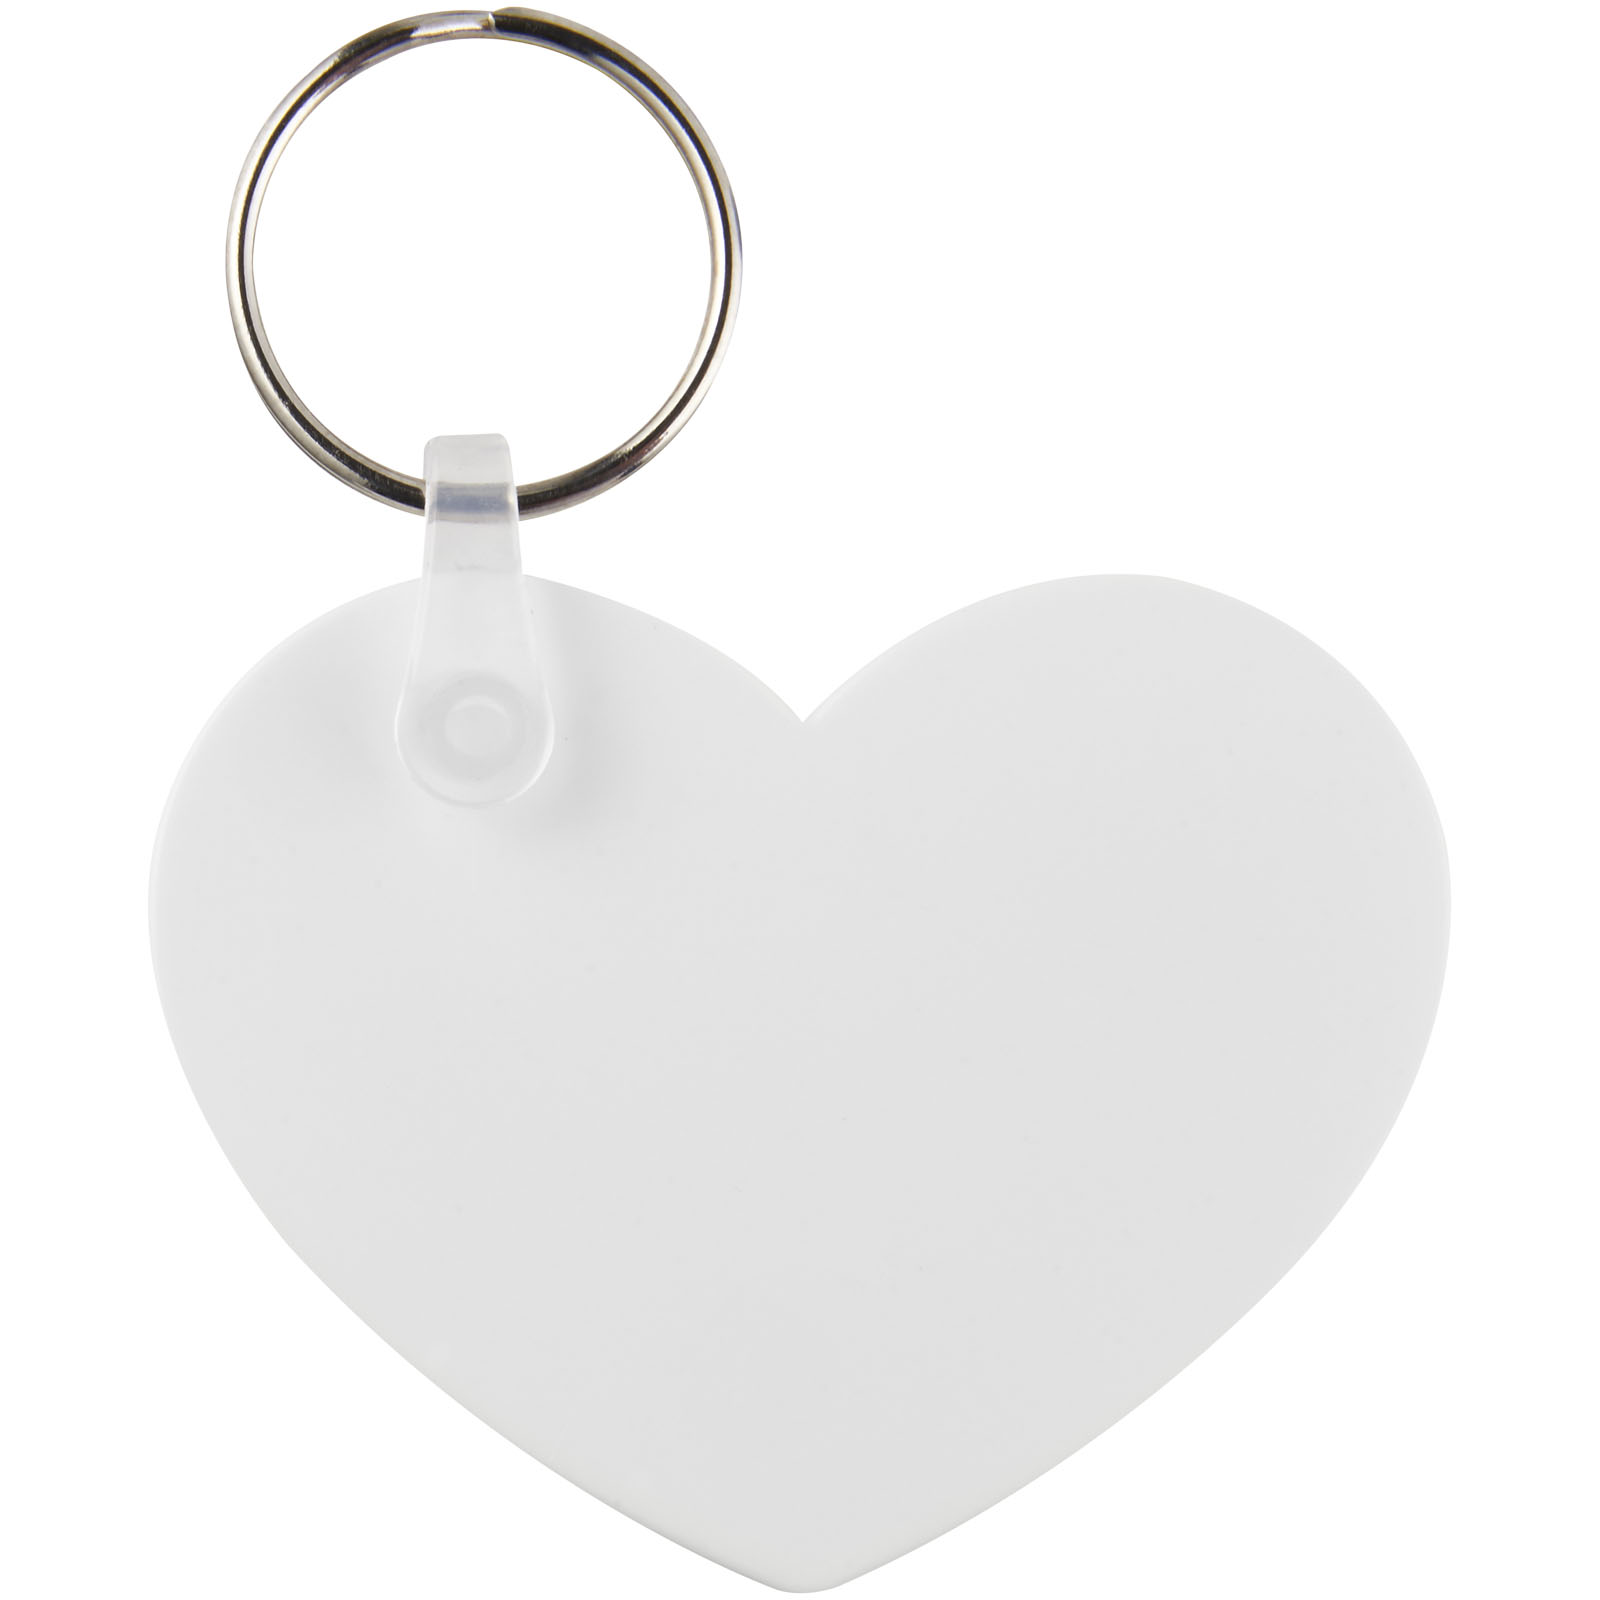 Porte-clés publicitaires - Porte-clés recyclé Taiten forme de cœur - 1